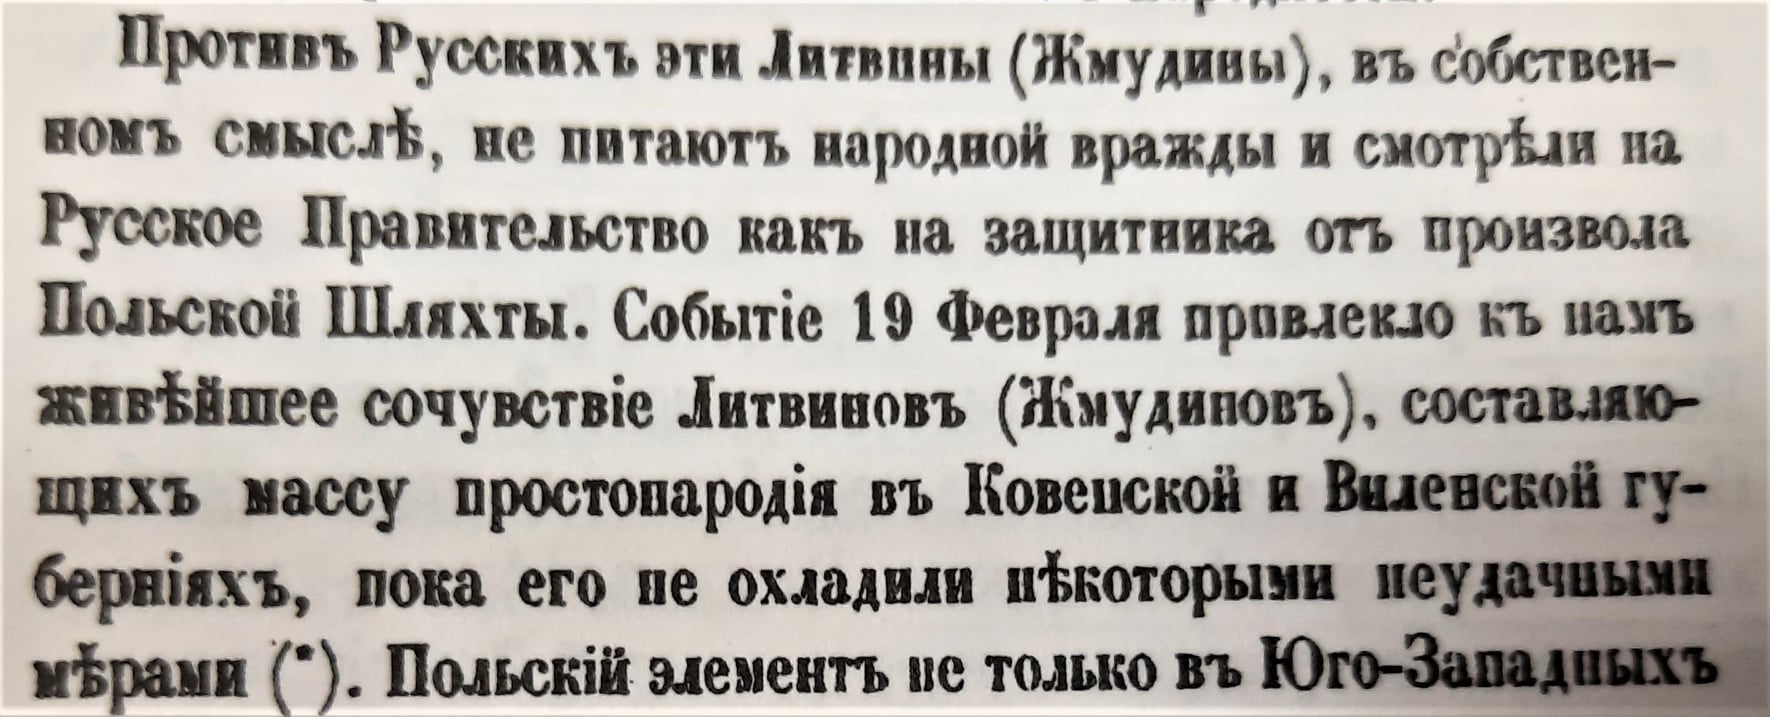 Царский генерал-губернатор Вильны Святополк Мирский в 1903 году писал императору о литвинах (жмудинах).jpg